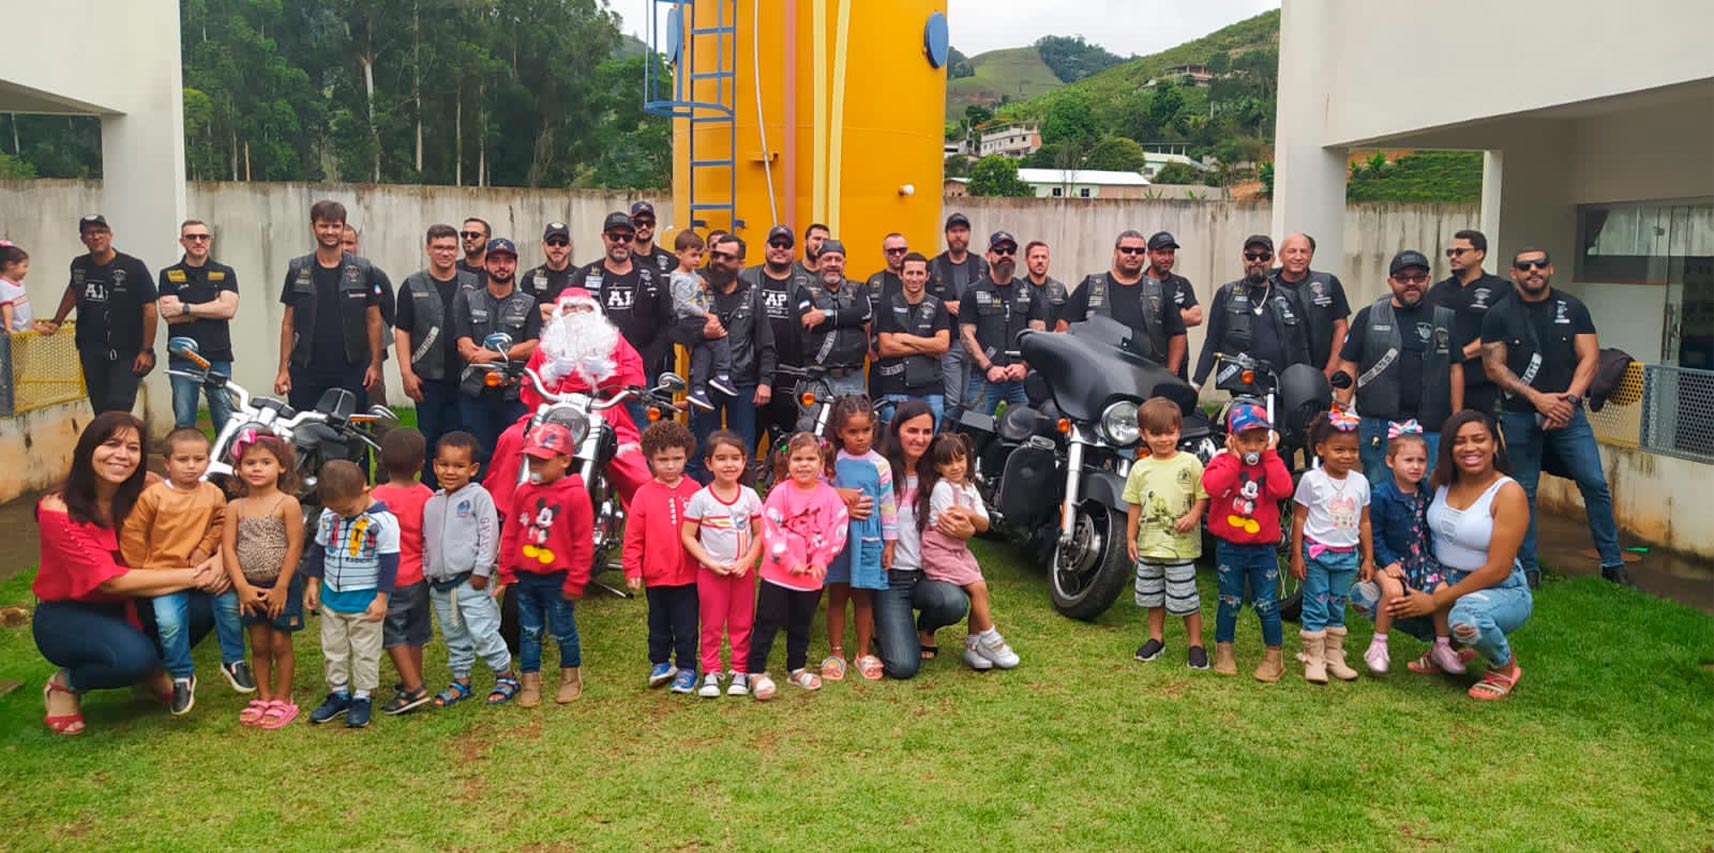 Crianças de Vargem Alta ganham presentes e show de motos durante visita do Papai Noel